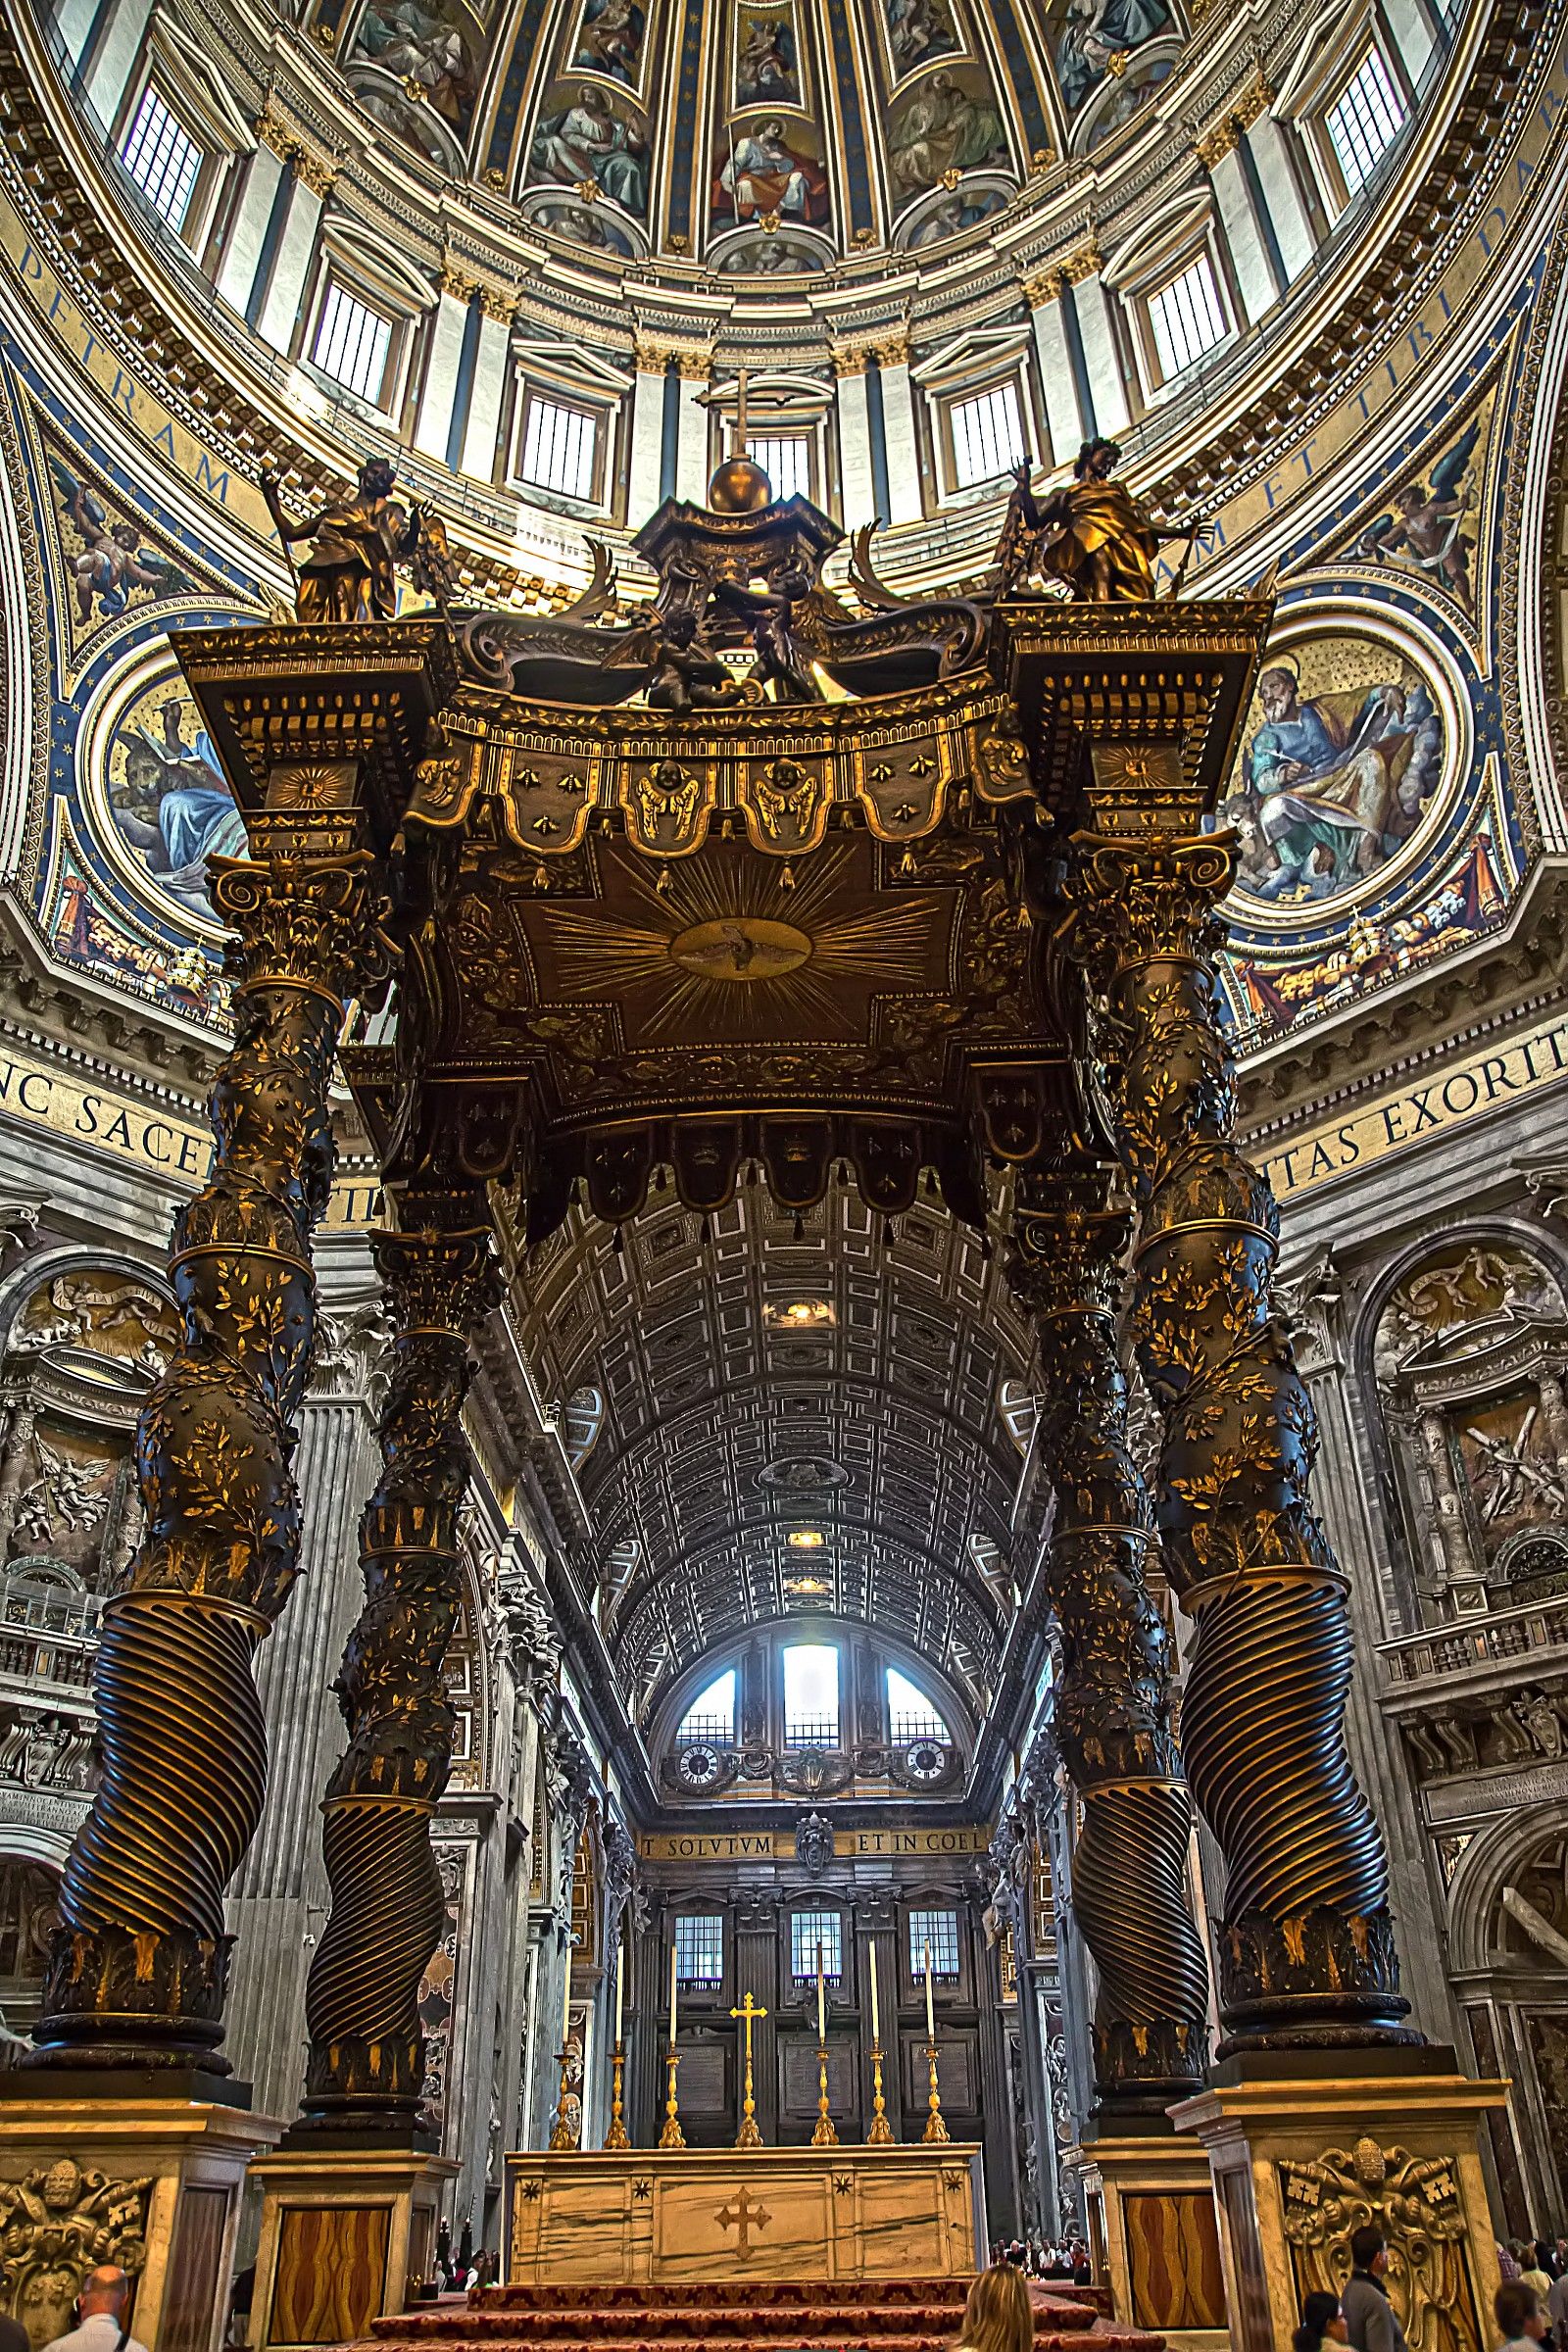 Inside St. Peter's...